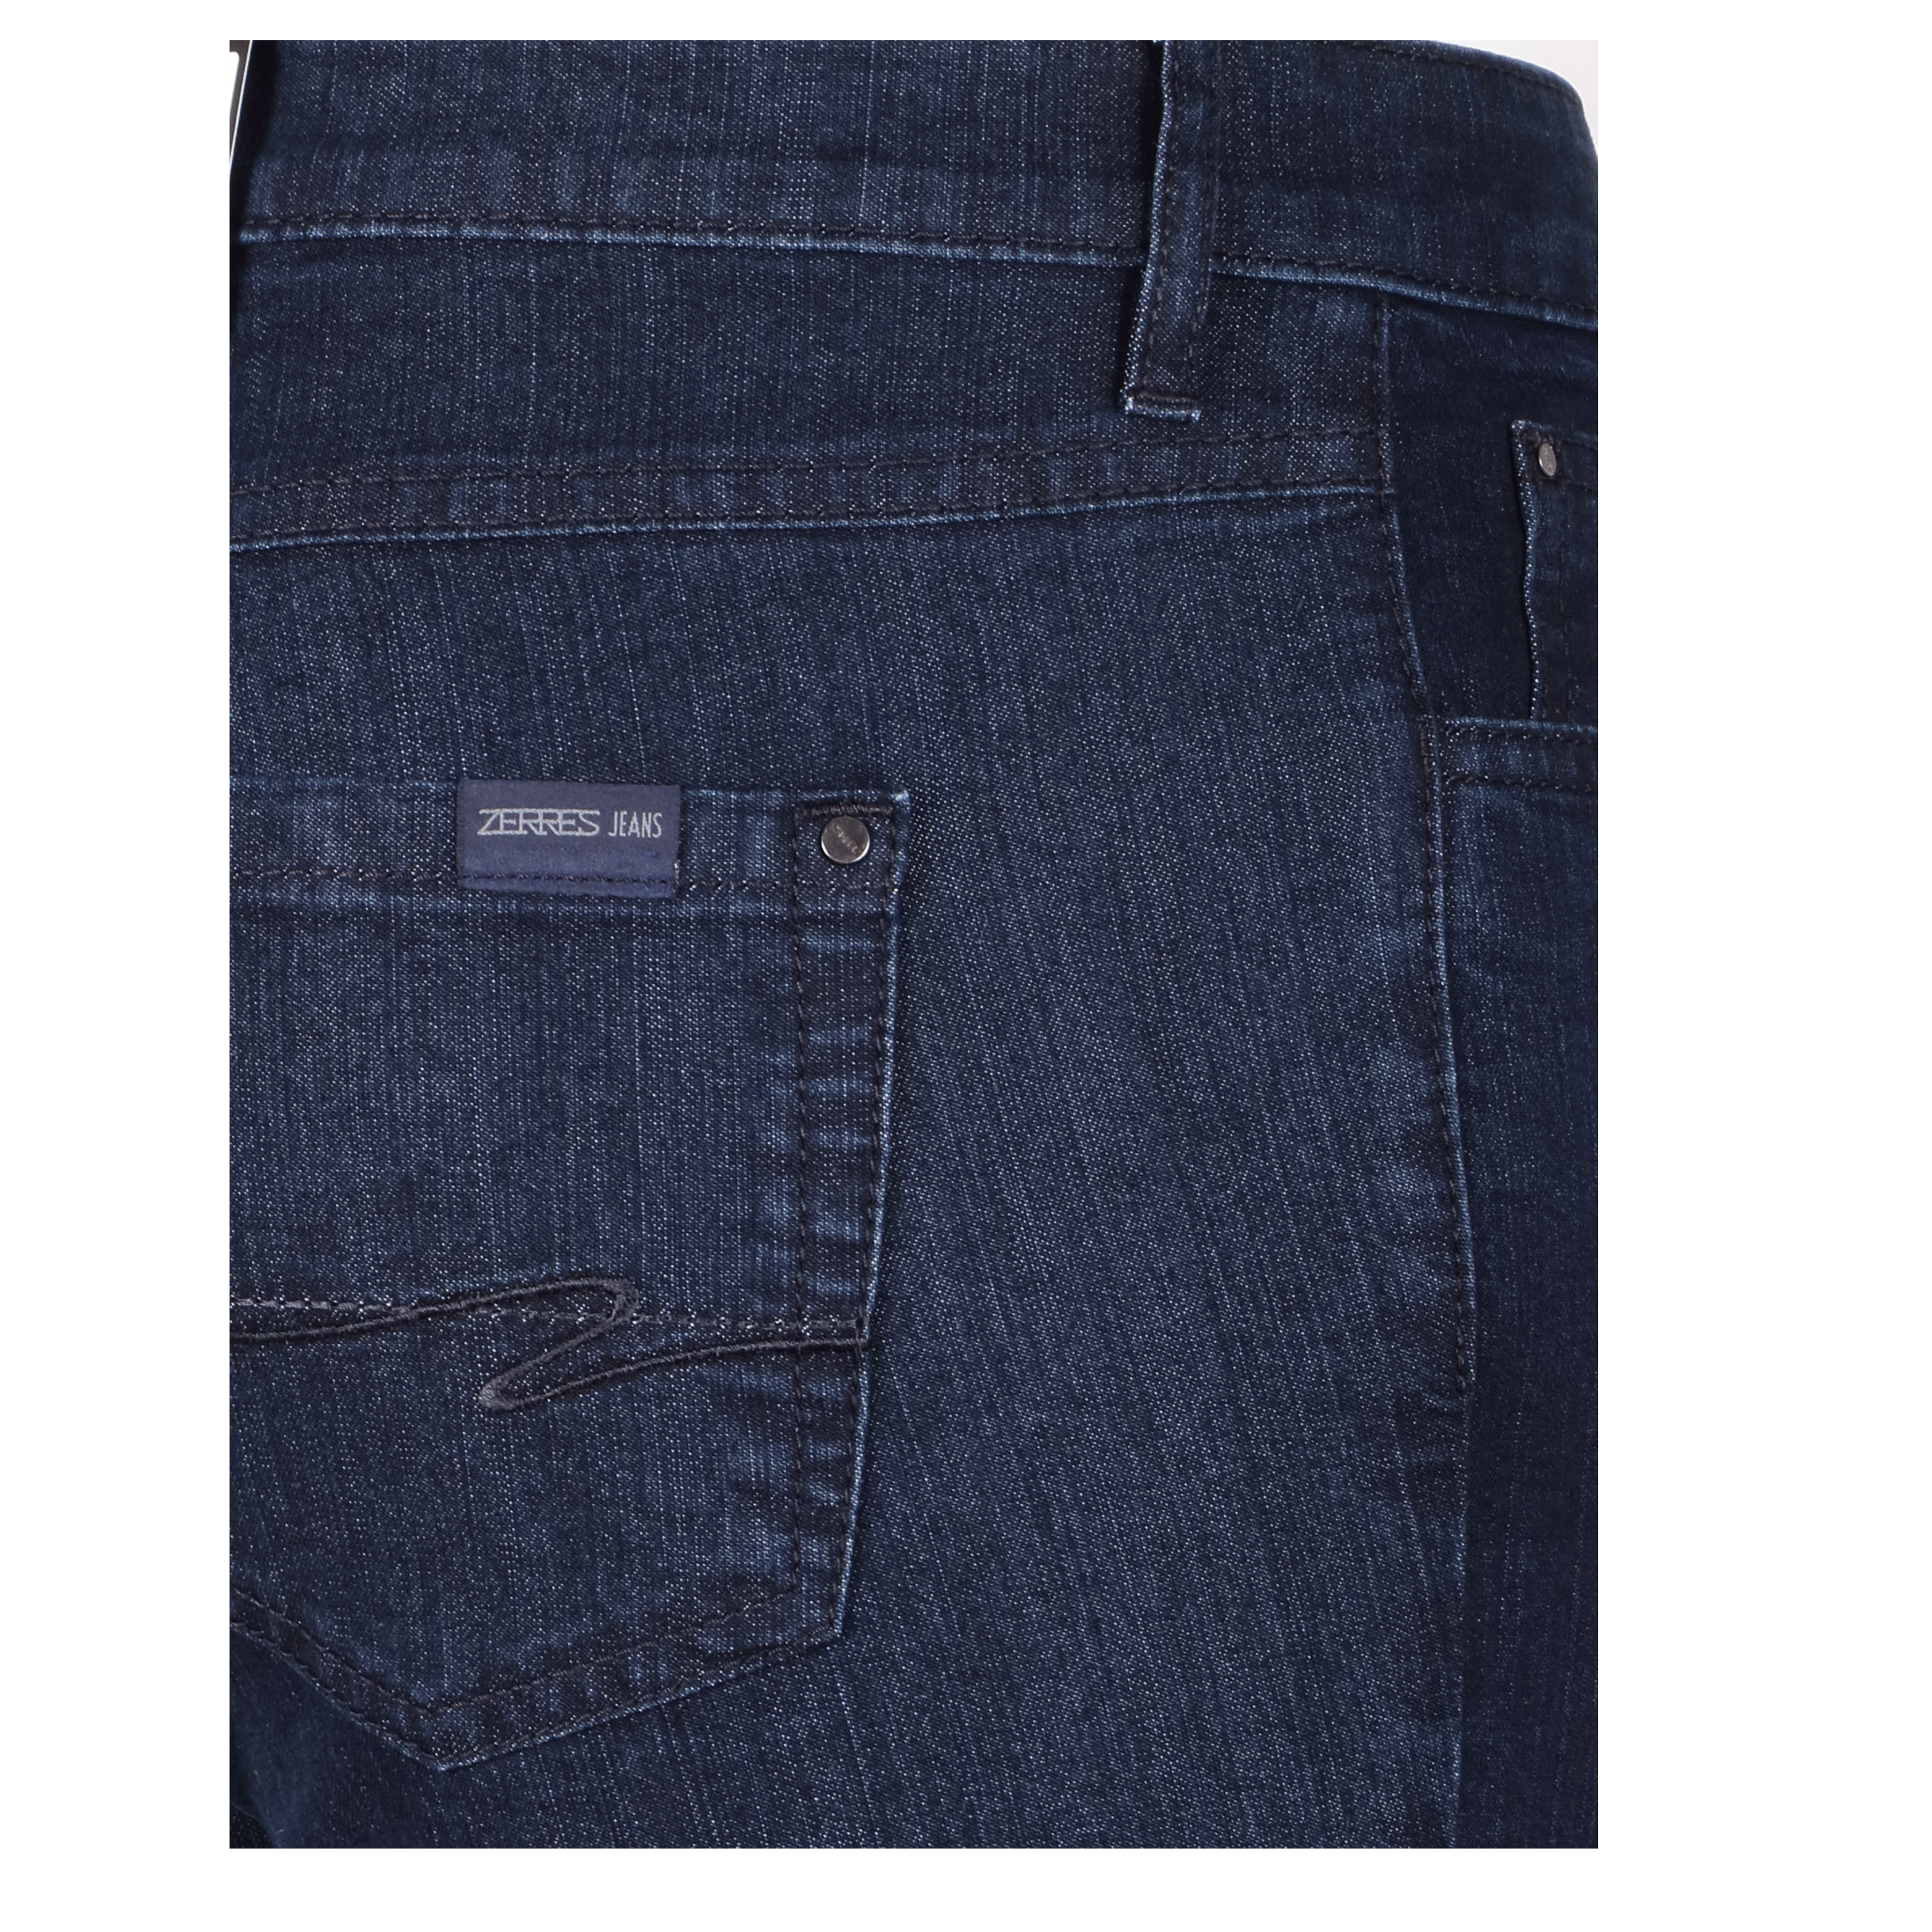 Zerres Damen Jeans Cora comfort S 21 dunkelblau